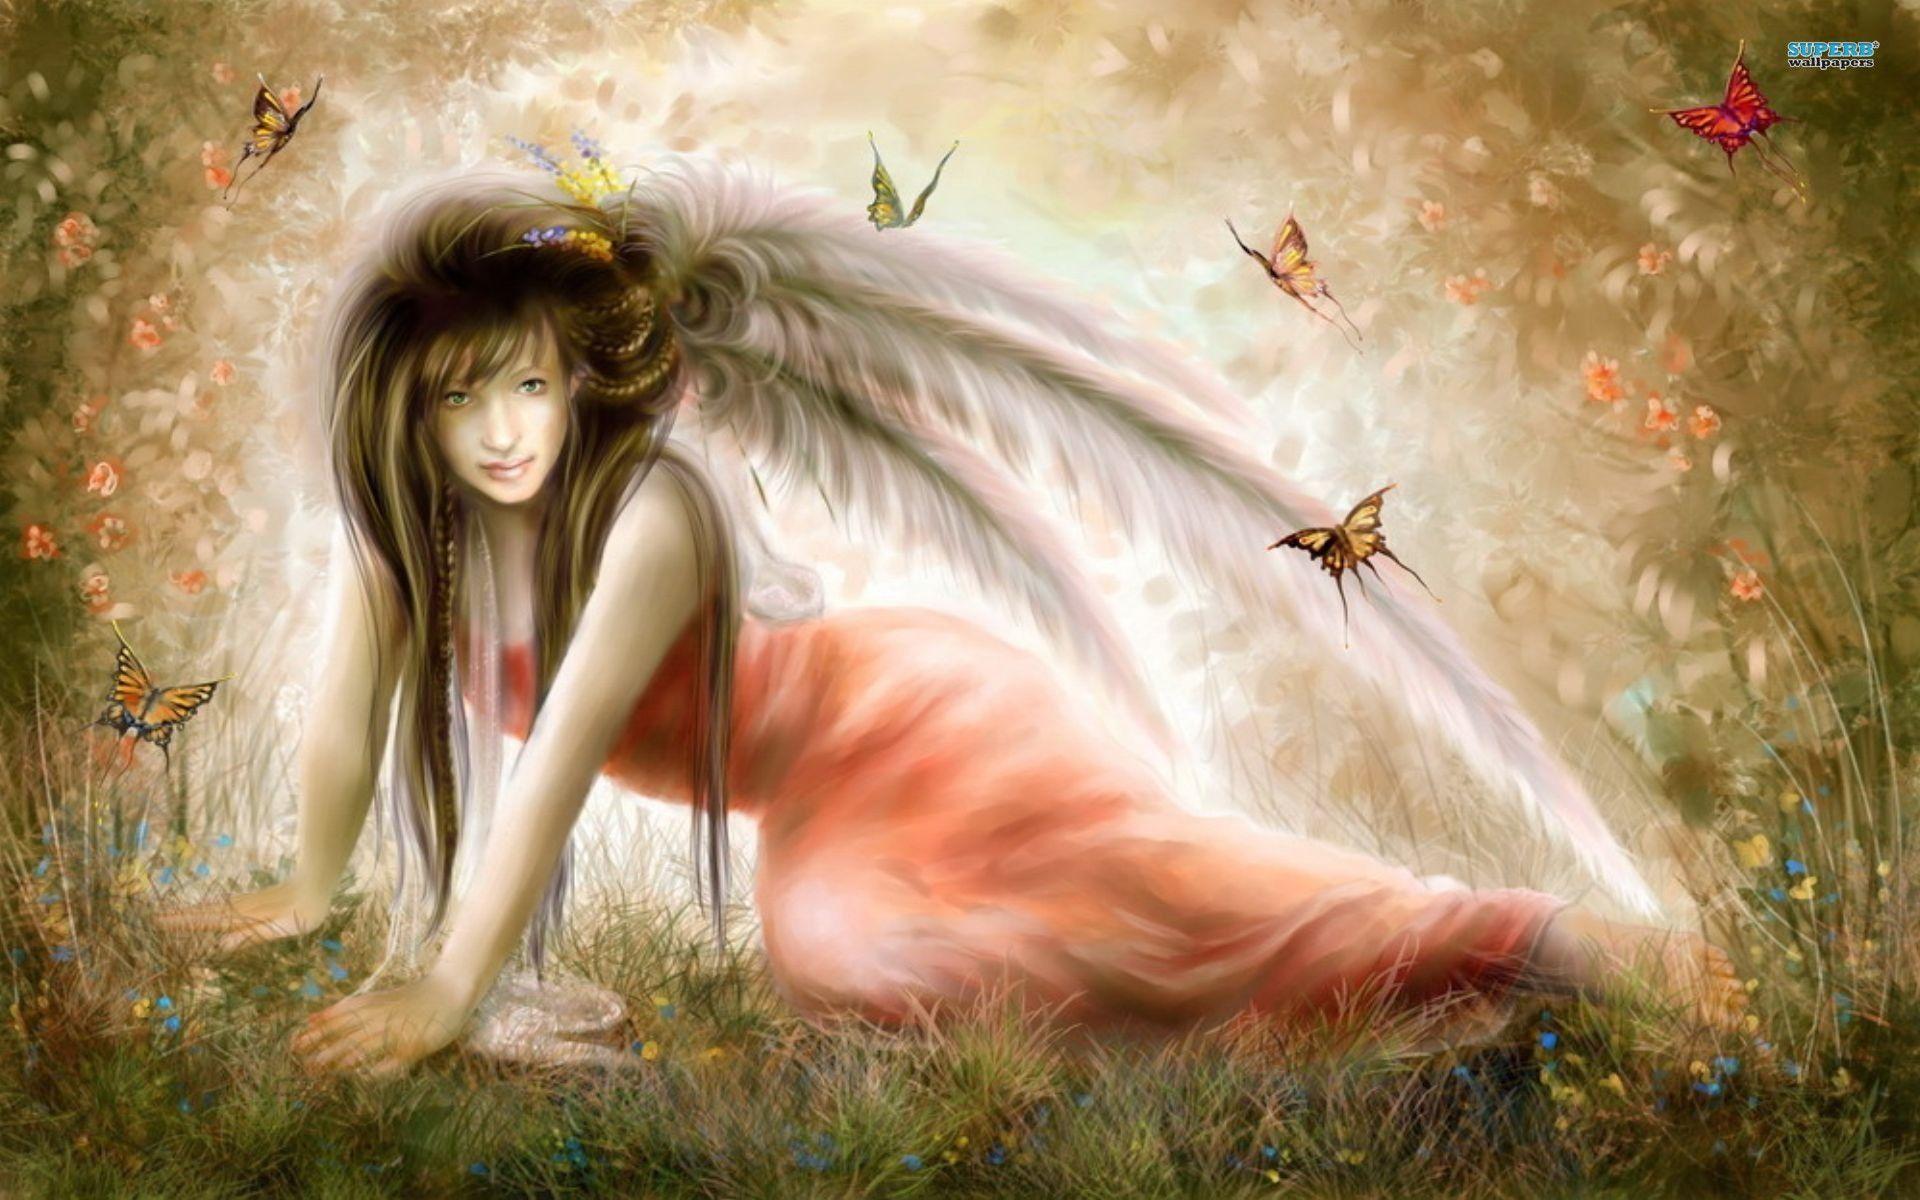 Girl with butterflies wallpaper wallpaper - #